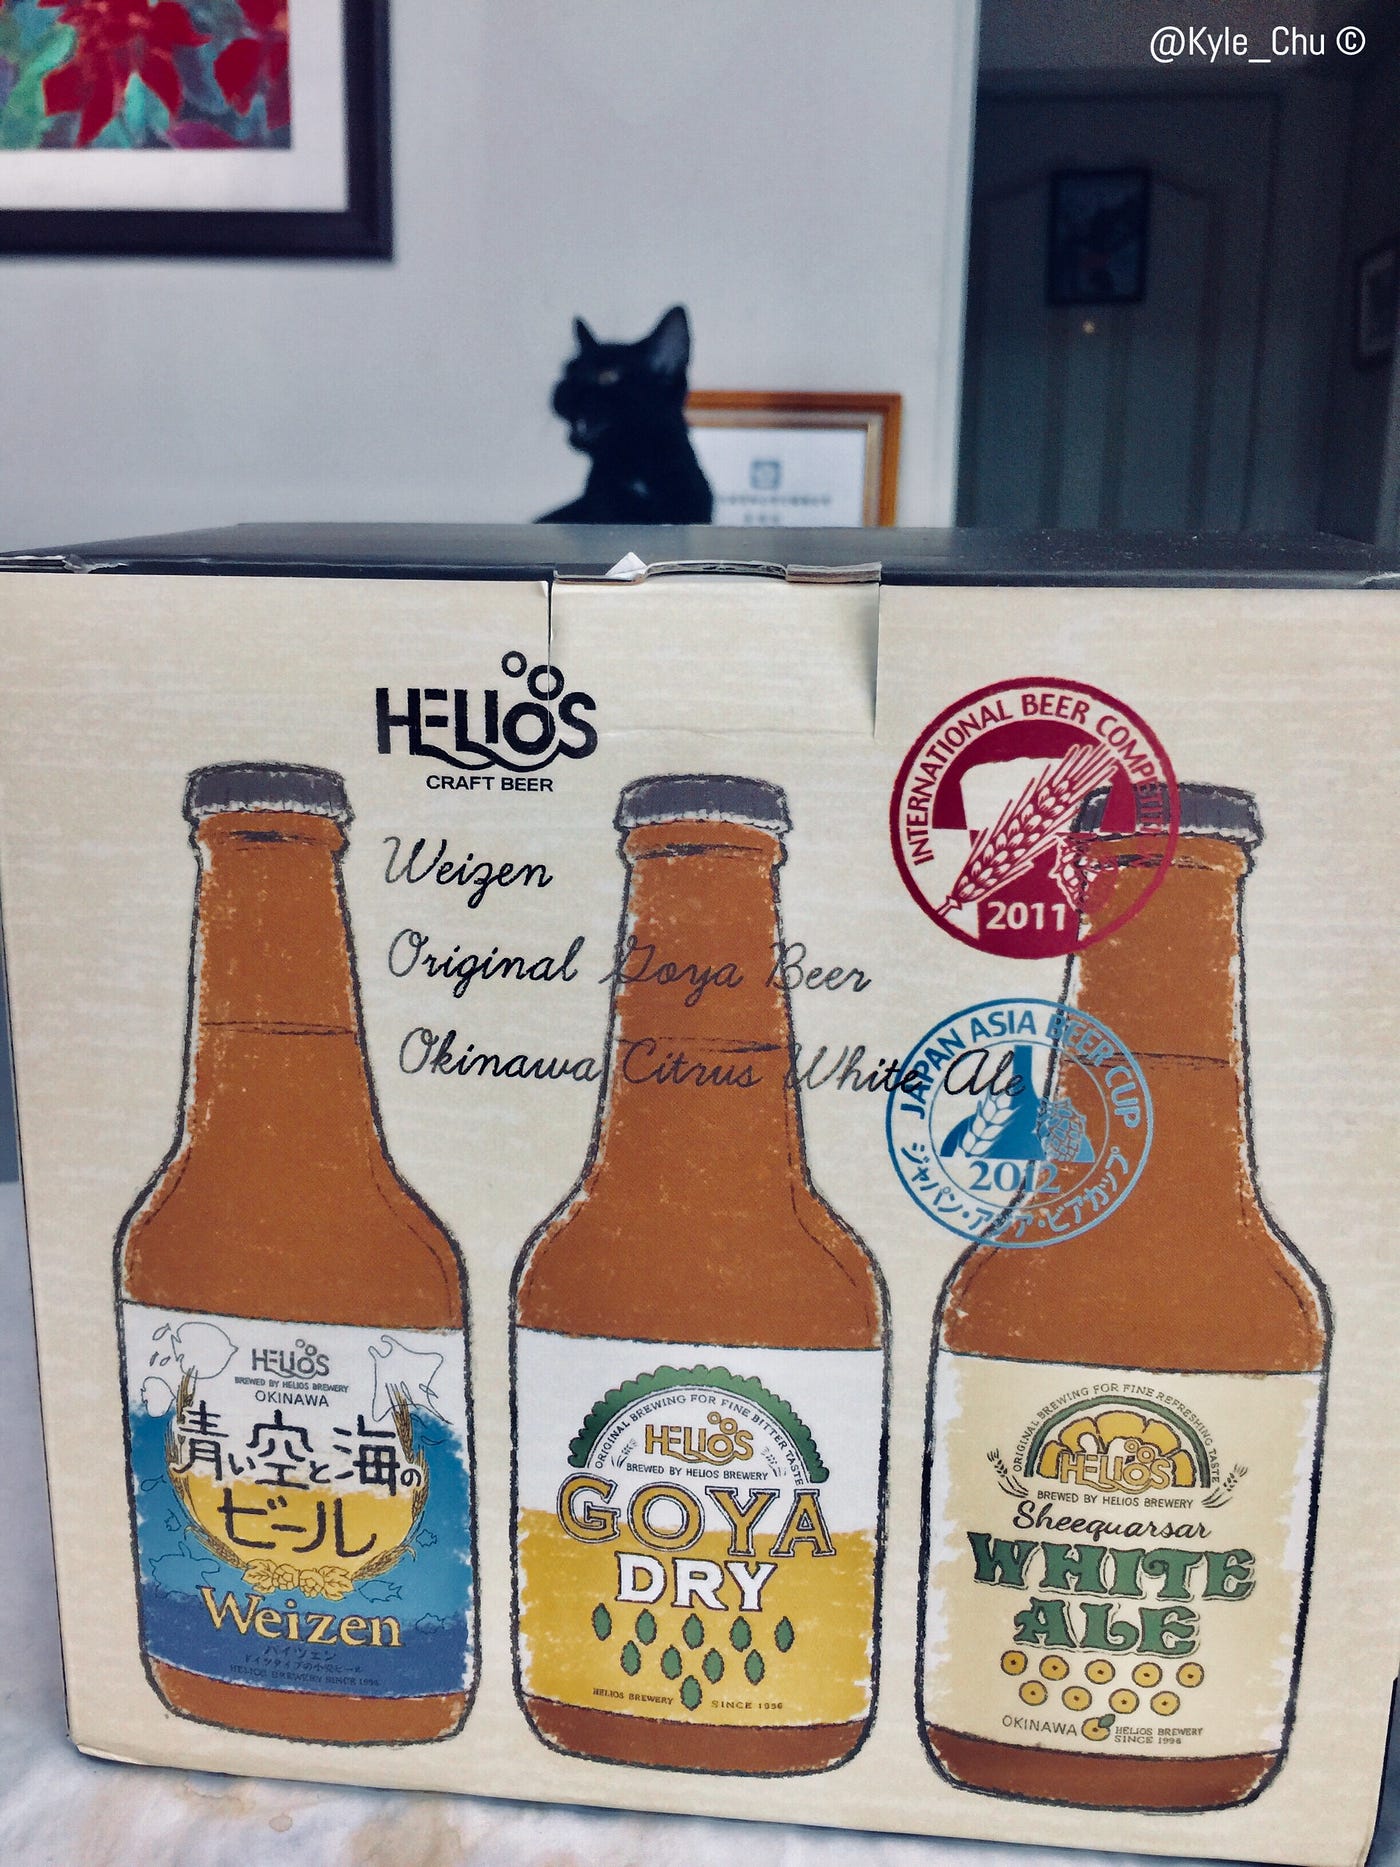 Helios 苦瓜 香檸 青空海啤酒 沖繩消暑滋味 好市多 Goya Dry Ale ｗhite Ale Helios Weizen Beer Taiwan Costco By Kyle Chu 微風捕手 Drink Medium